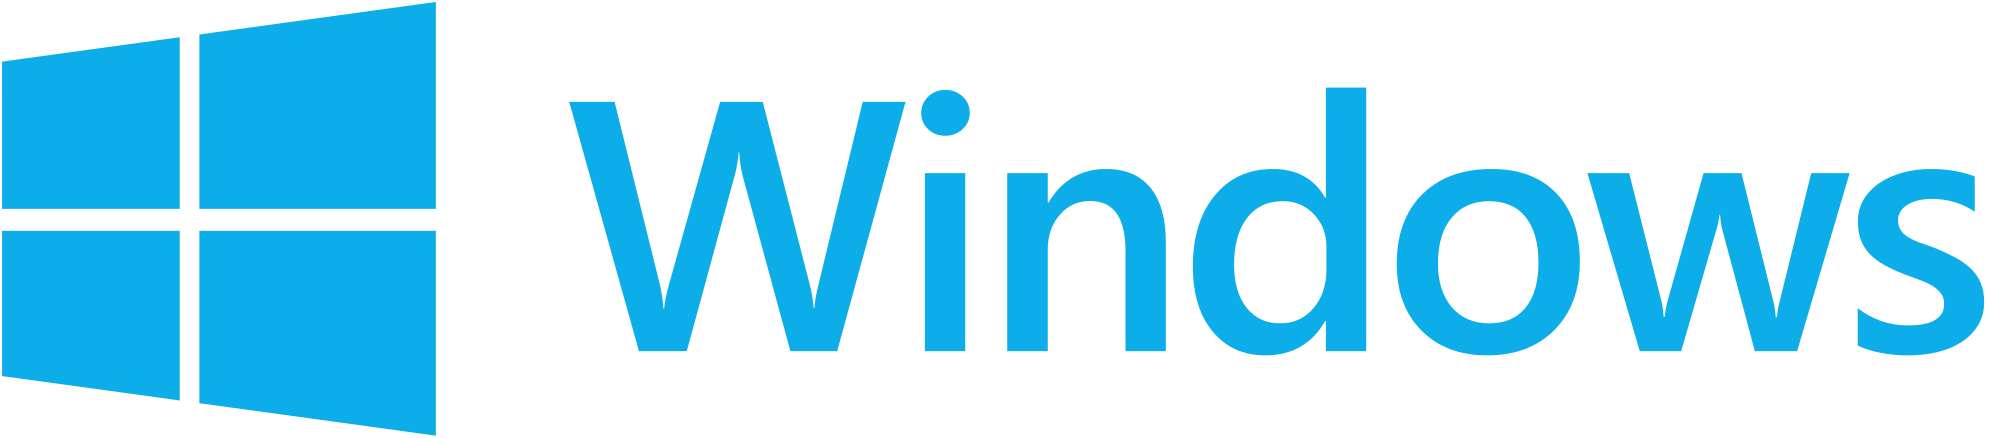 Windows 12 Logo - Windows logo.png